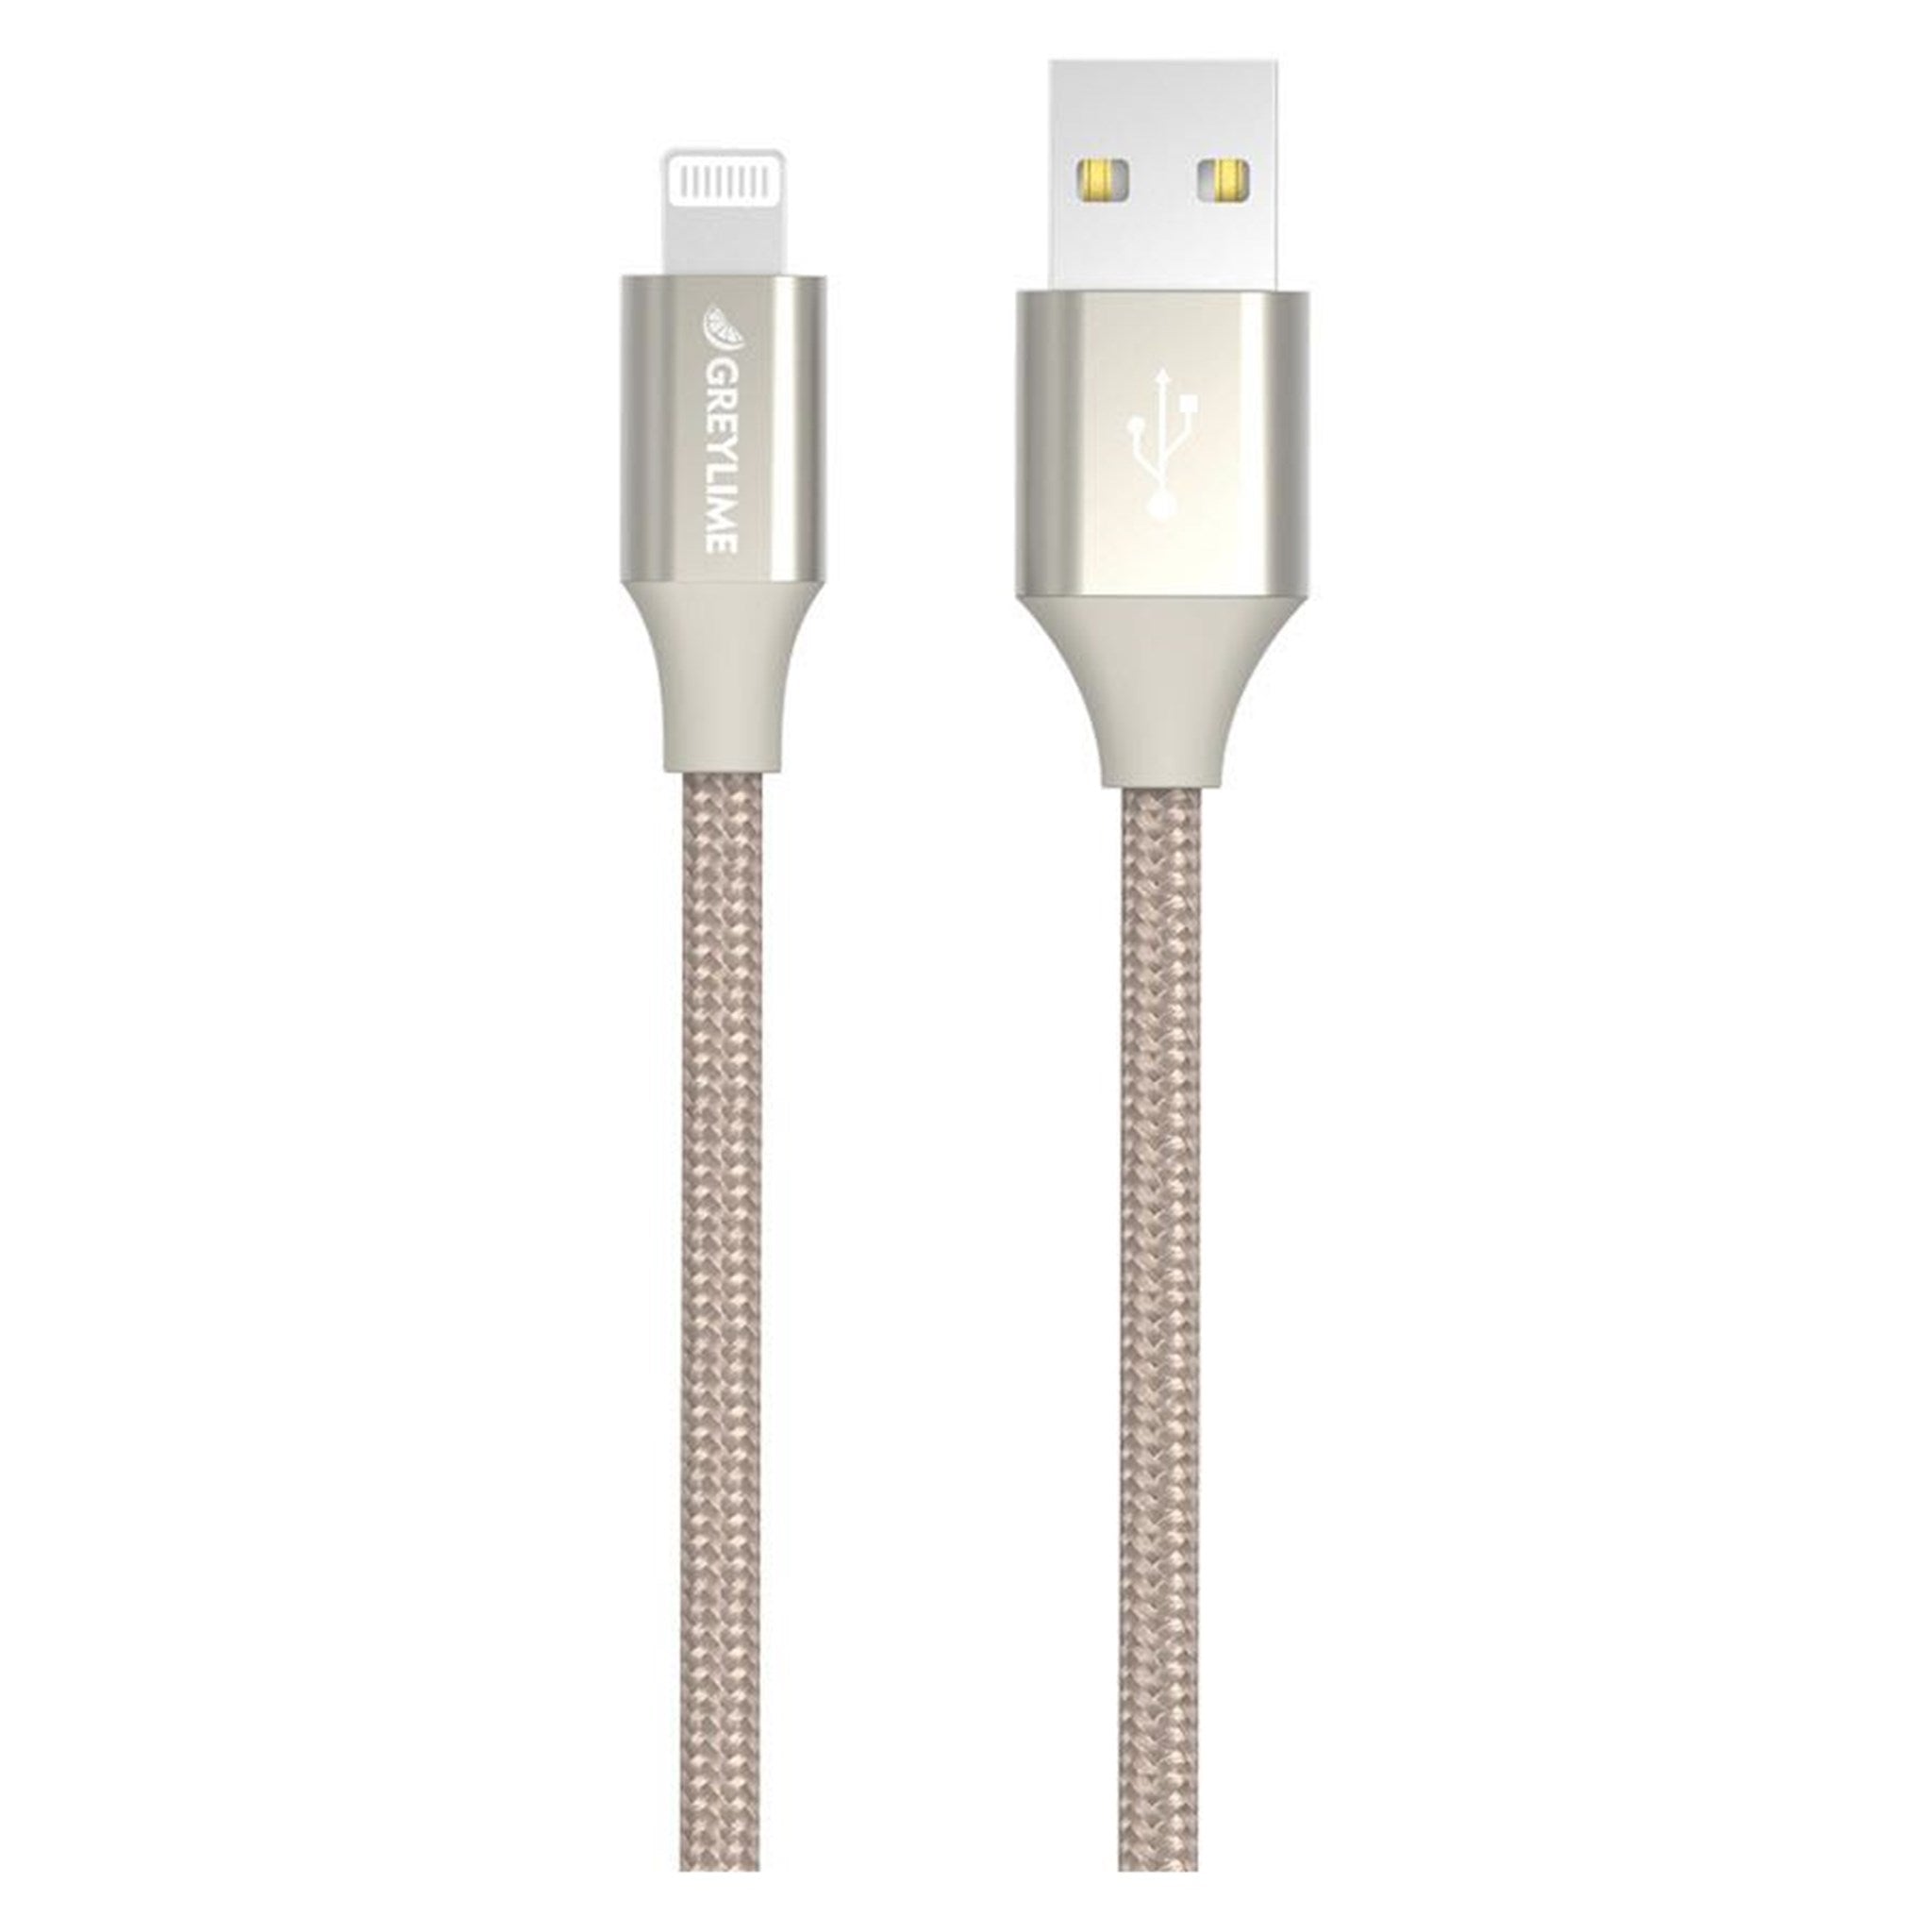 Billede af GreyLime Braided USB-A til MFi Lightning Kabel Beige 1 m hos GreyLime